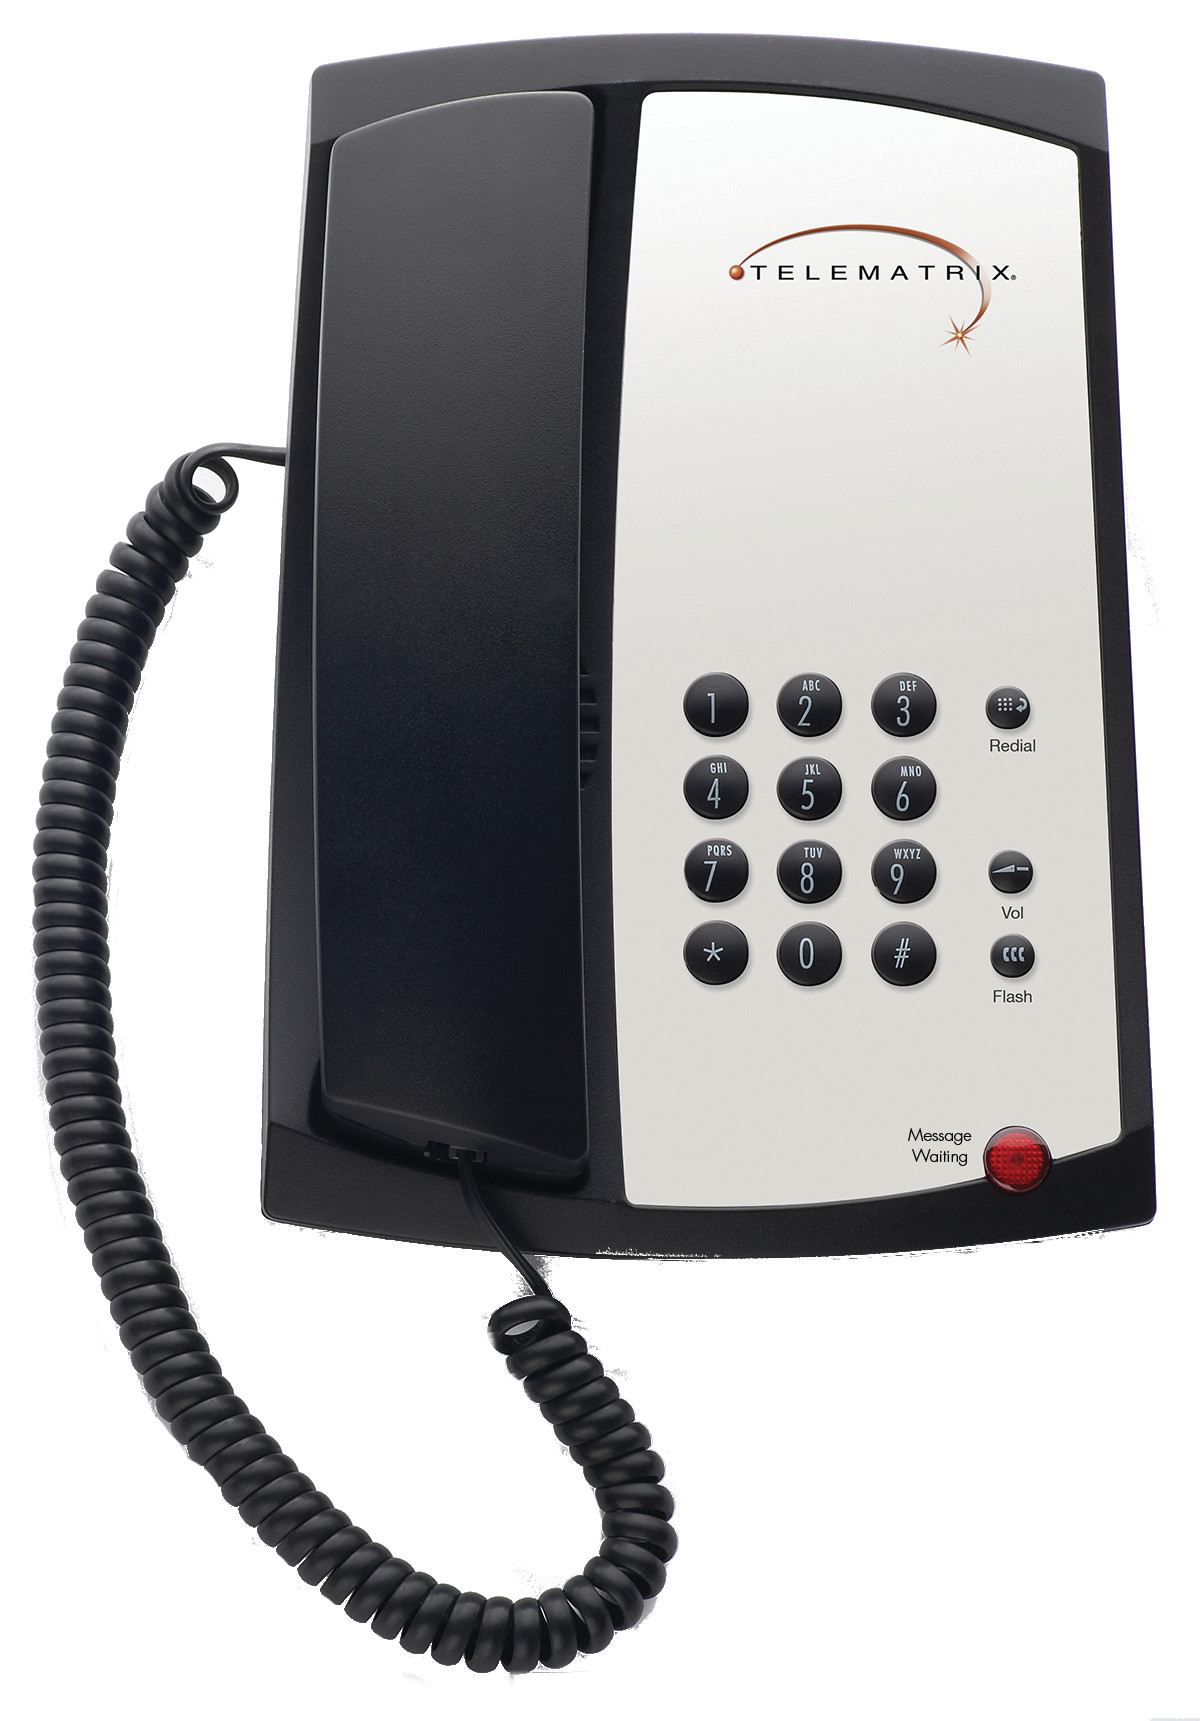 telematrix marquis 3100mwb black analog corded hotel phones cetis 1